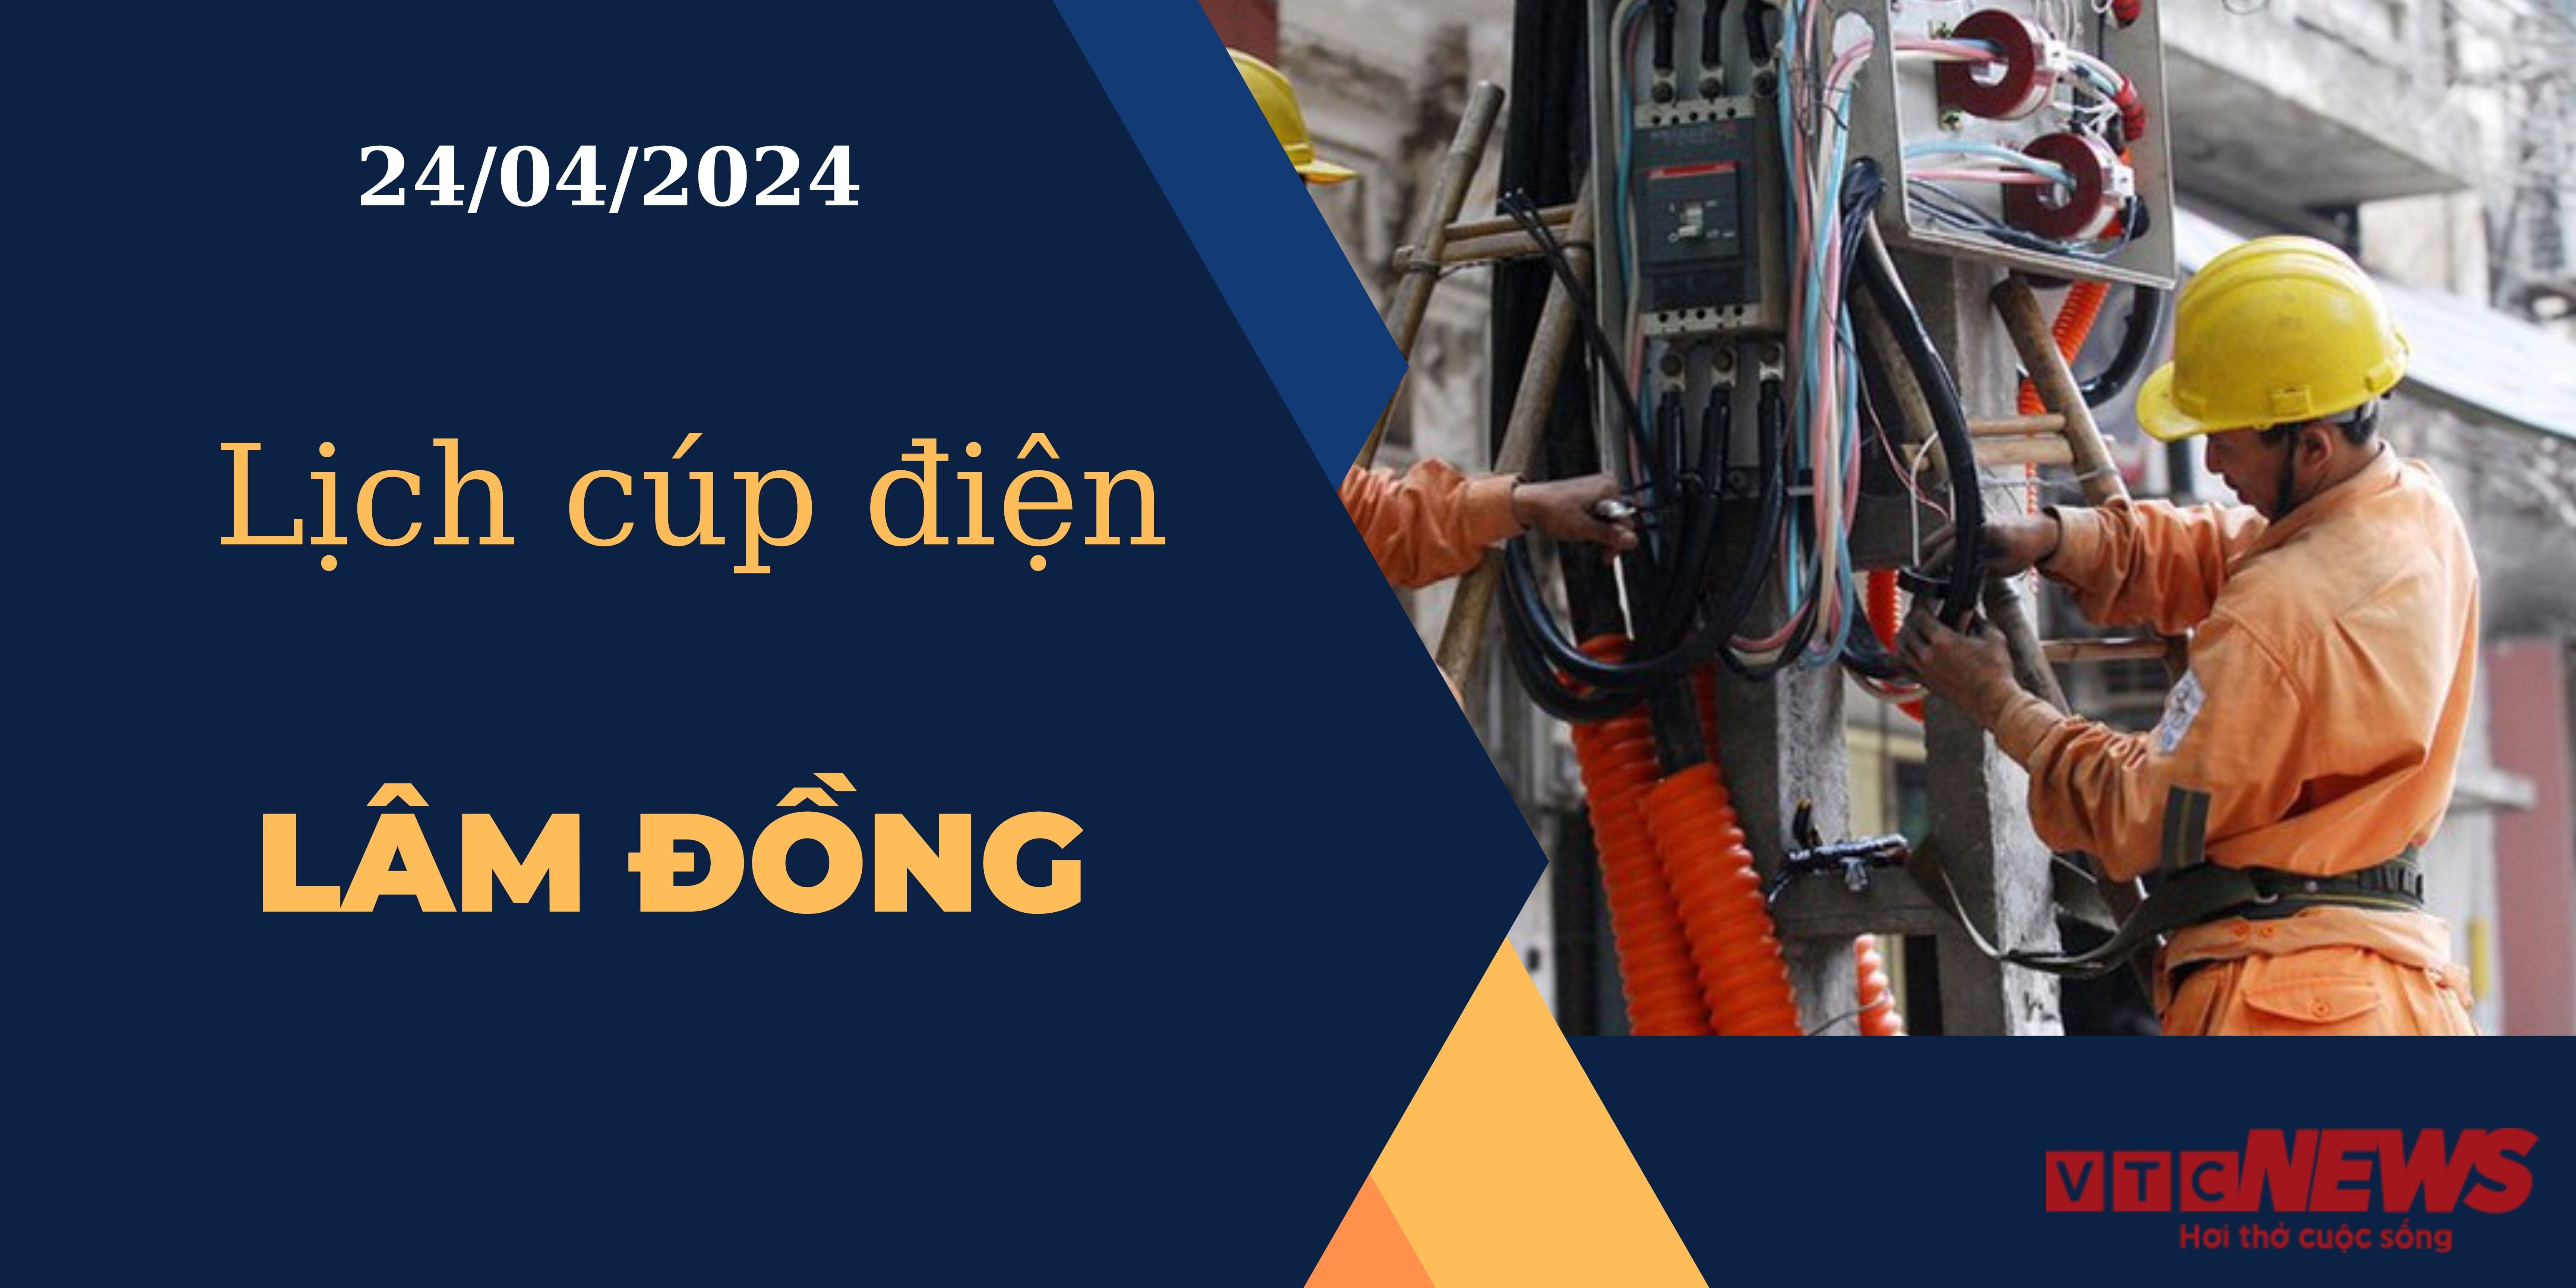 Lịch cúp điện hôm nay tại Lâm Đồng ngày 24/04/2024